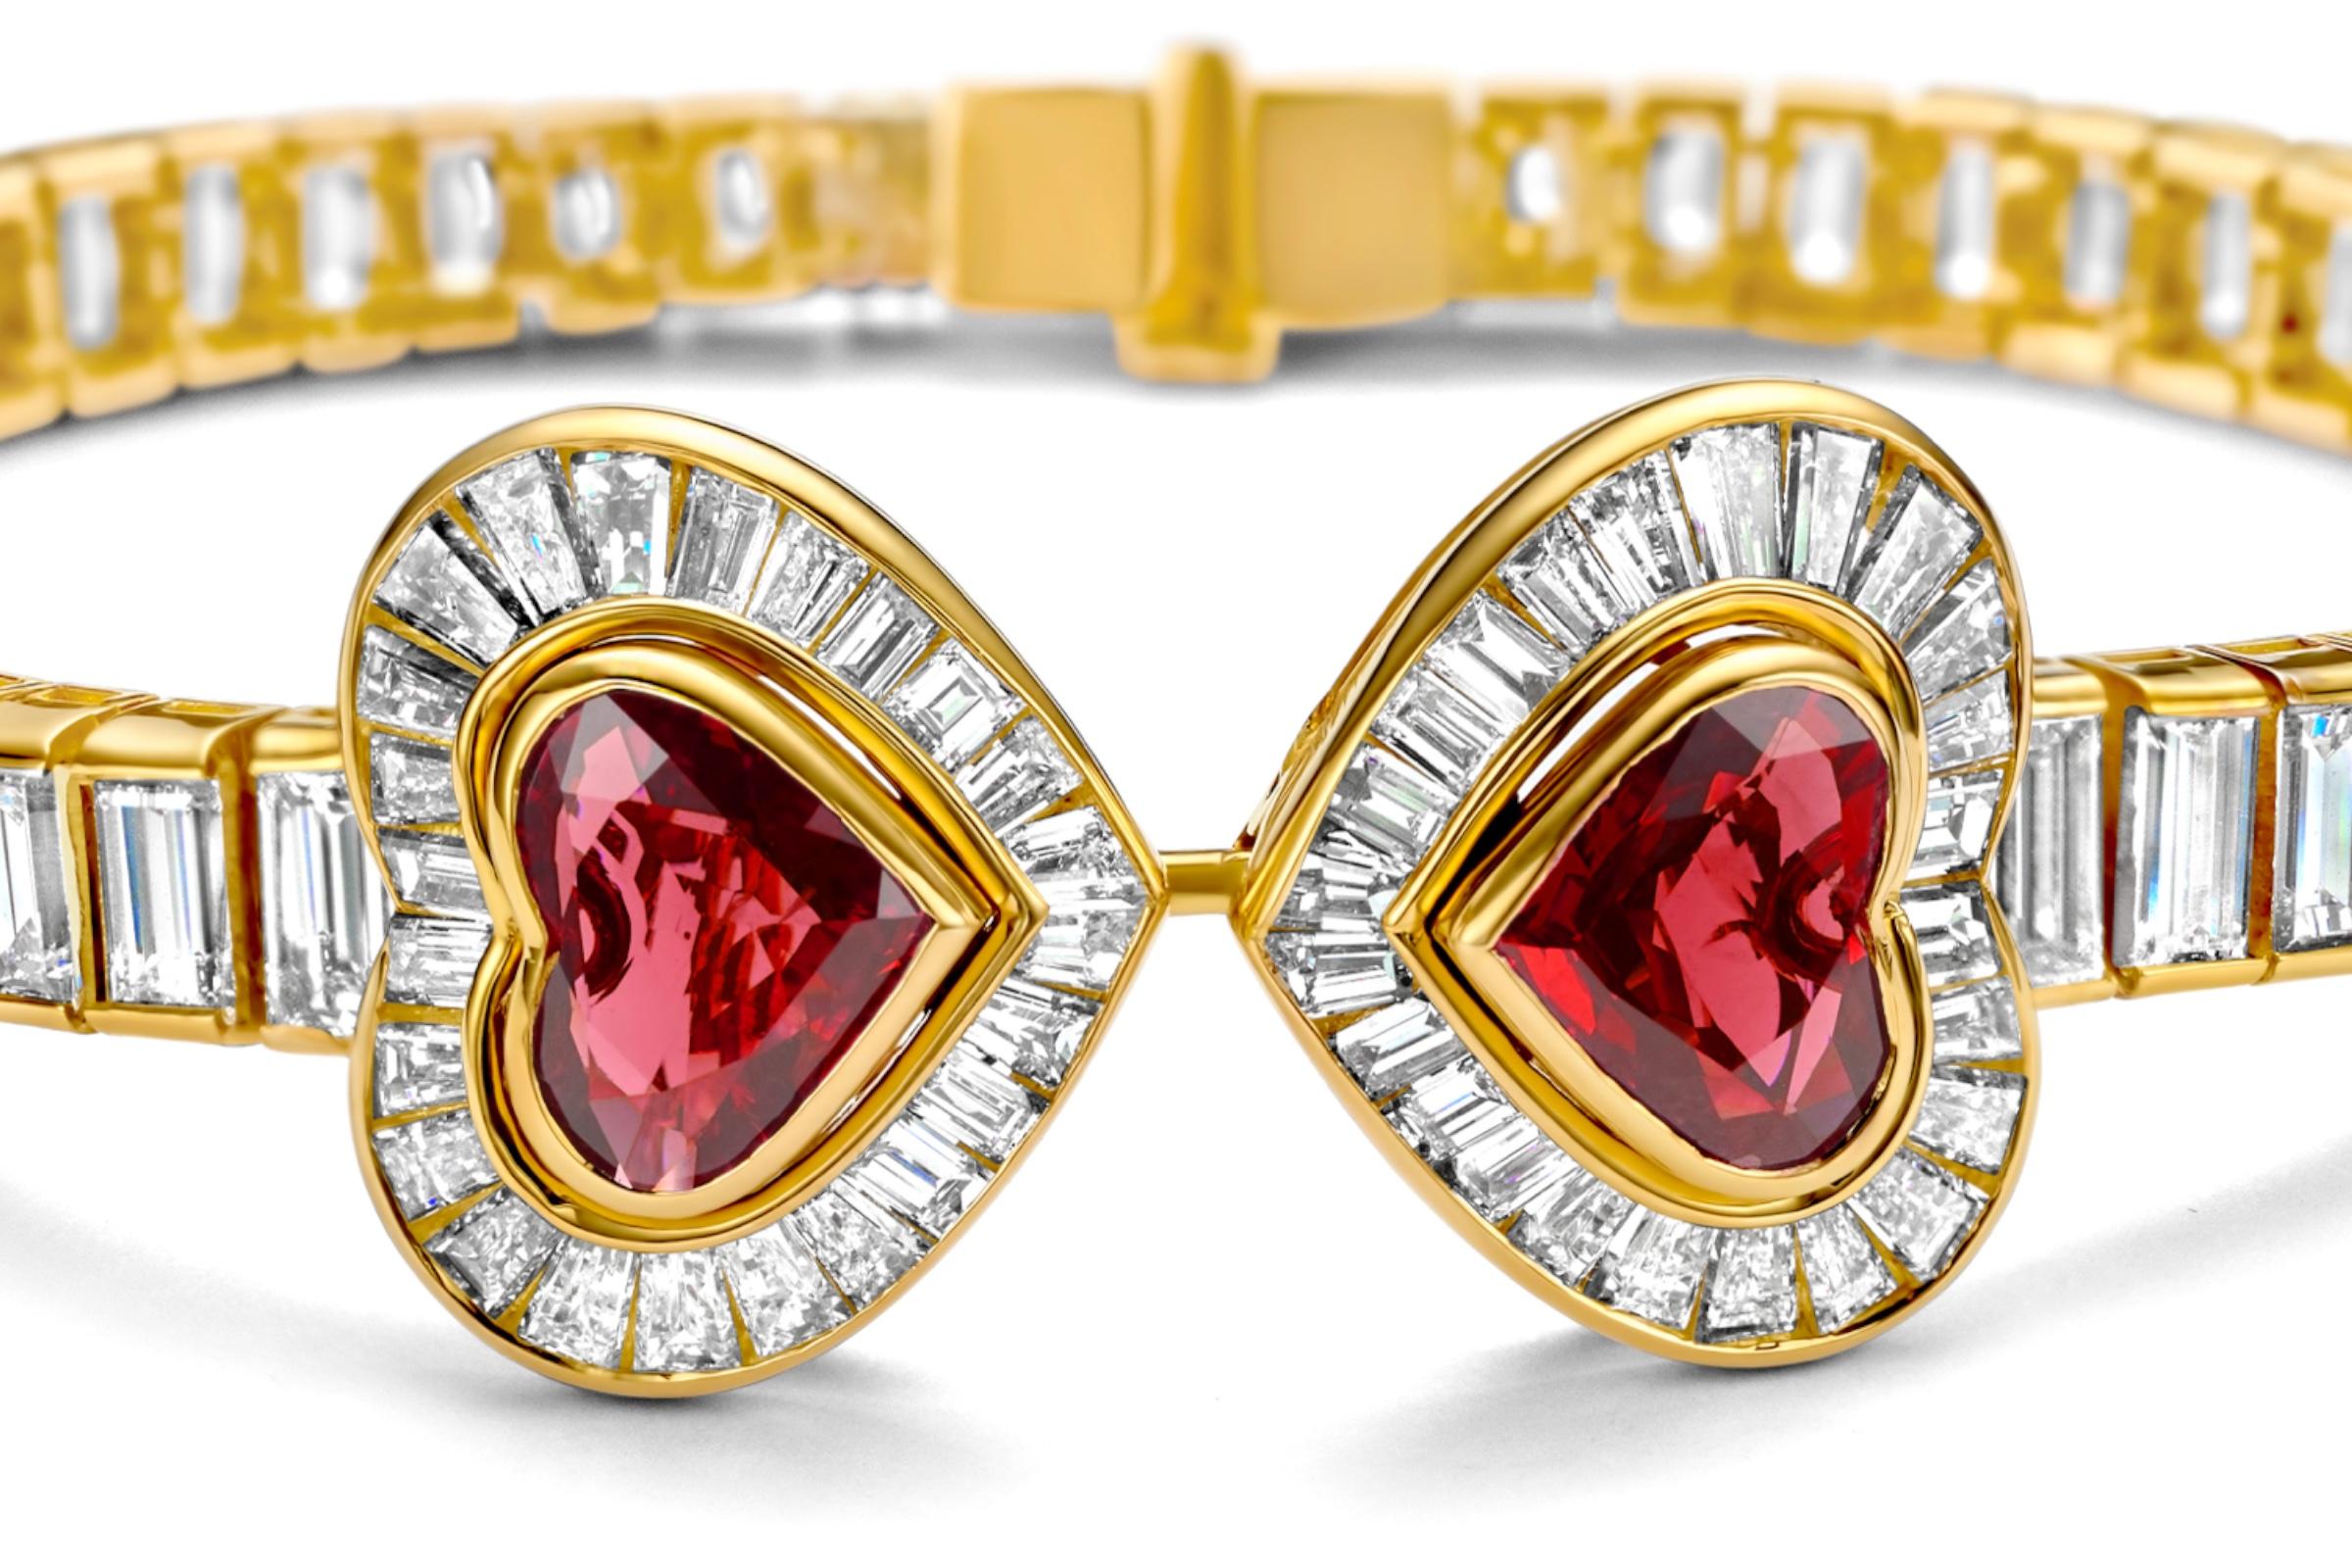 Adler Genève Set 18k Gold Necklace, Ring, Earrings, Bracelet, Ruby, Diamonds For Sale 9